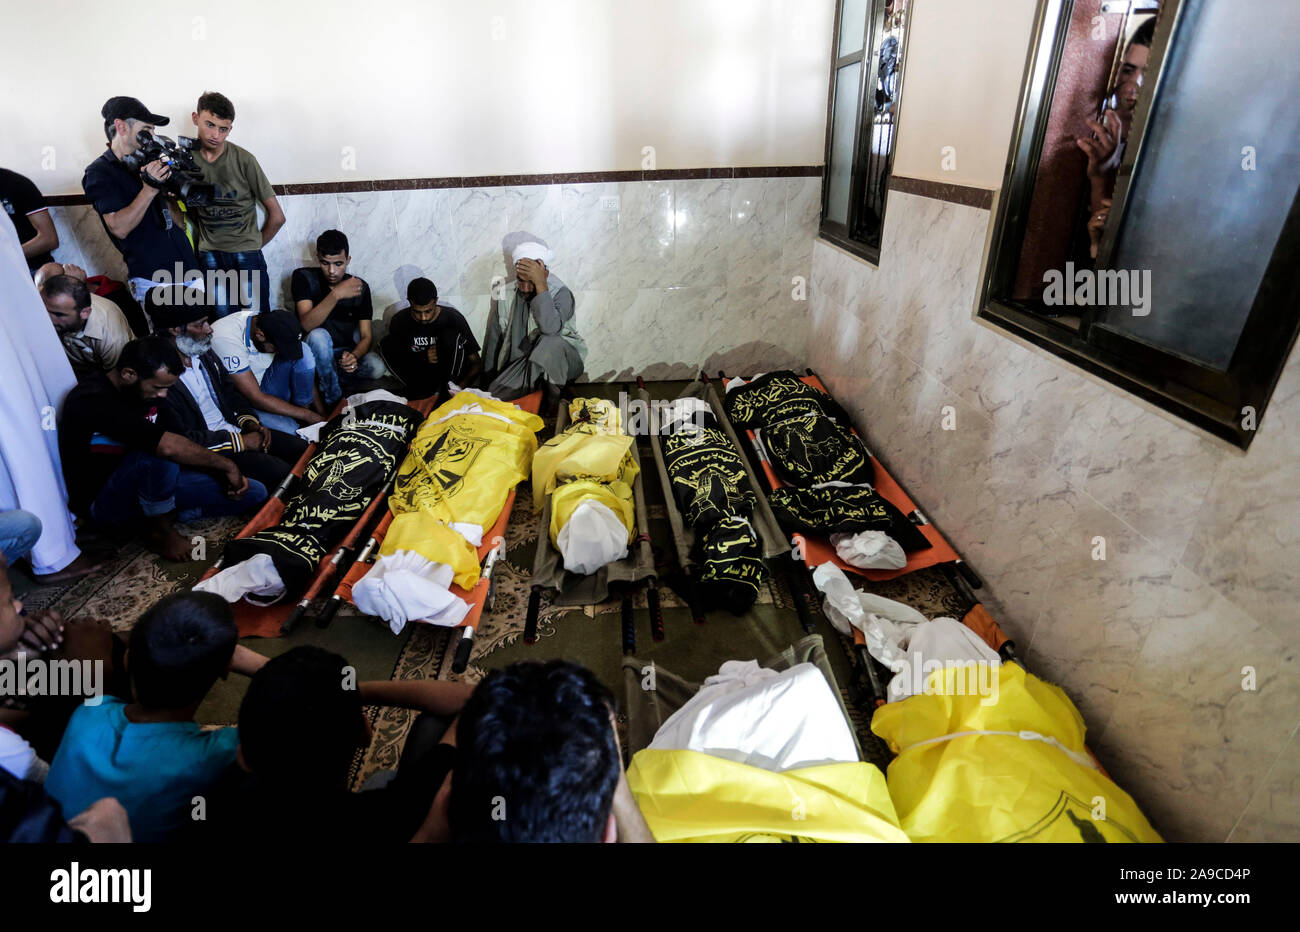 (EDITOR'S NOTE: Bild zeigt Tod) Palästinensische trauernde neben dem Körper von Rasmi Abu Malhous und sieben Mitglieder seiner Familie während der Trauerfeier in einer Moschee in Deir al-Balah, zentralen Gazastreifen. Die Verstorbenen wurden in einer Nacht israelischen Raketenangriff, dass Ihr Haus gezielt getötet. Stockfoto